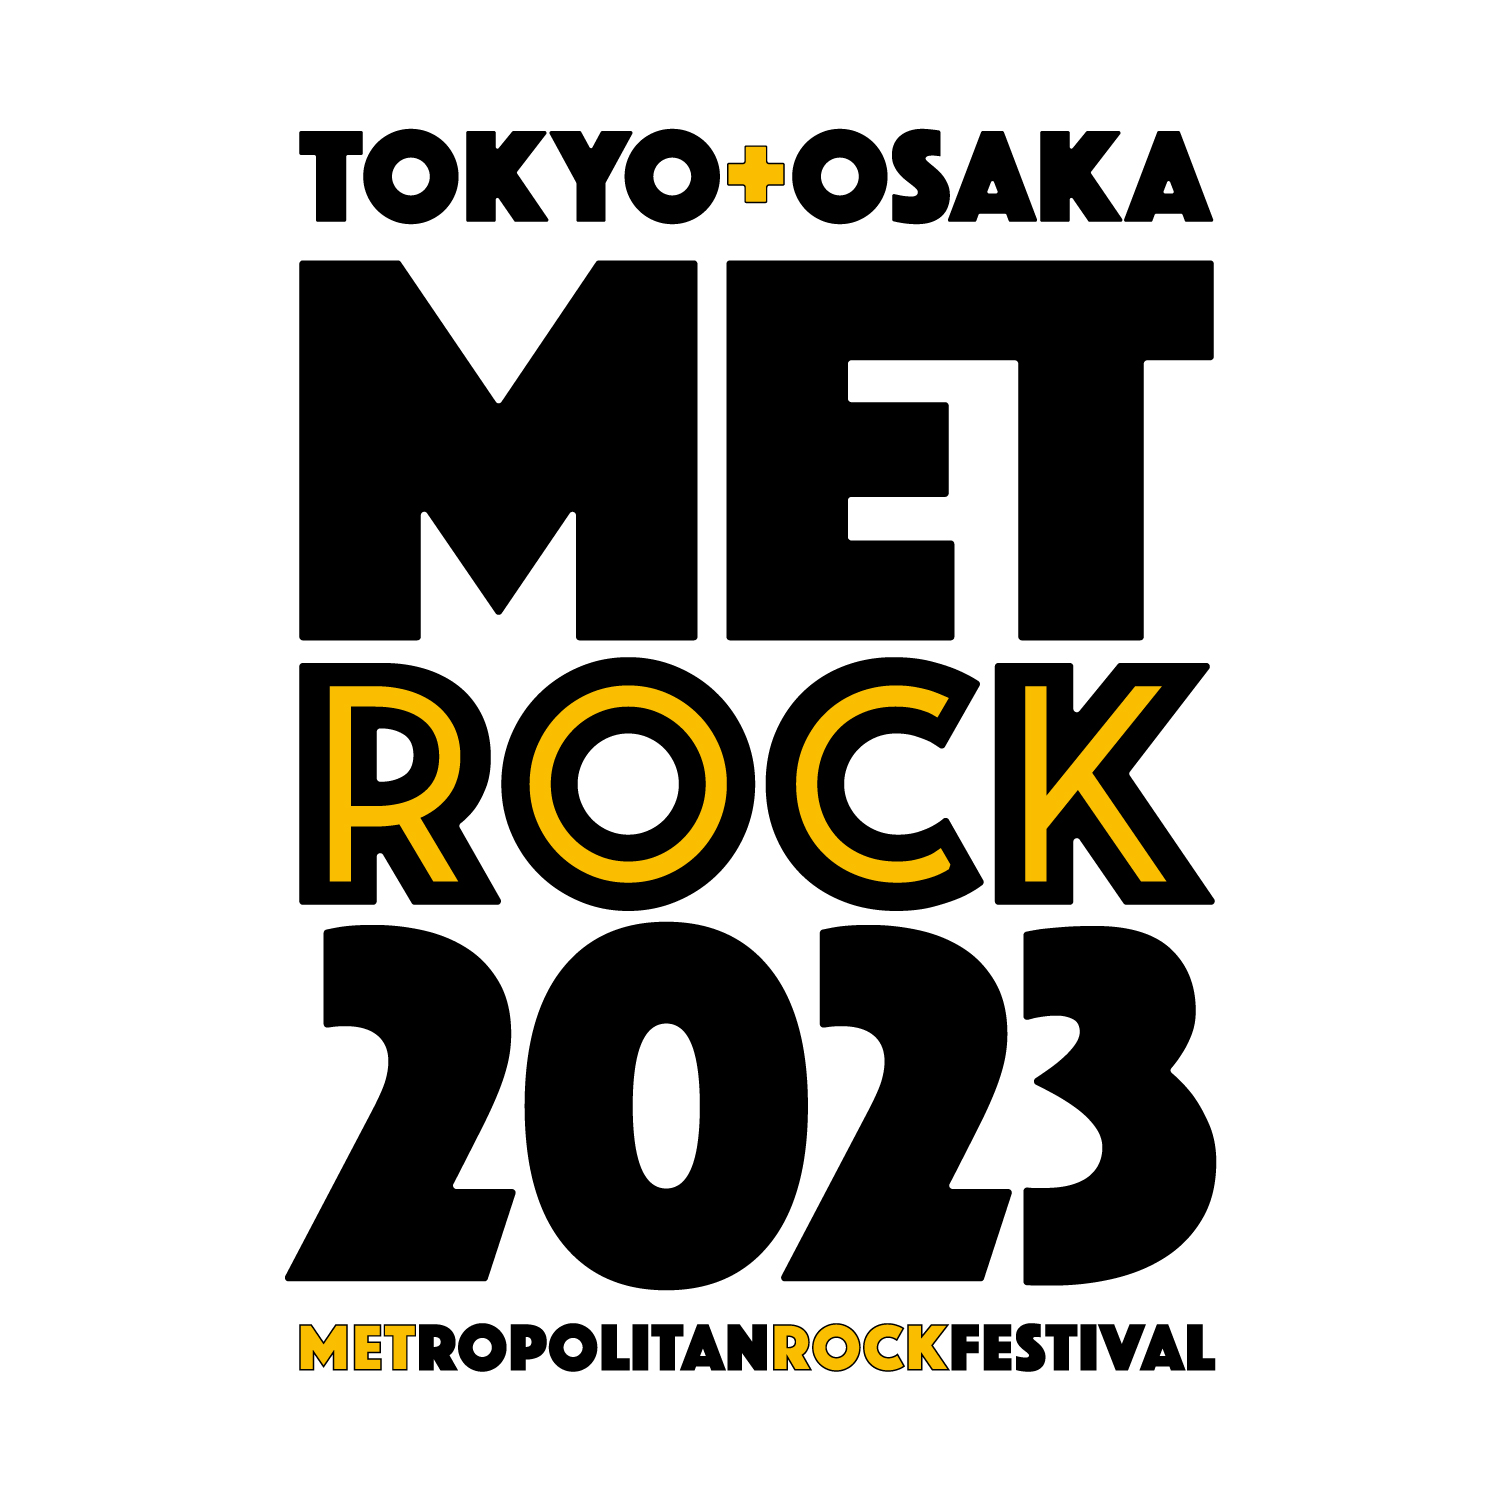 【大阪】OSAKA METROPOLITAN ROCK FESTIVAL 2023 (大阪府堺市・海とのふれあい広場) 